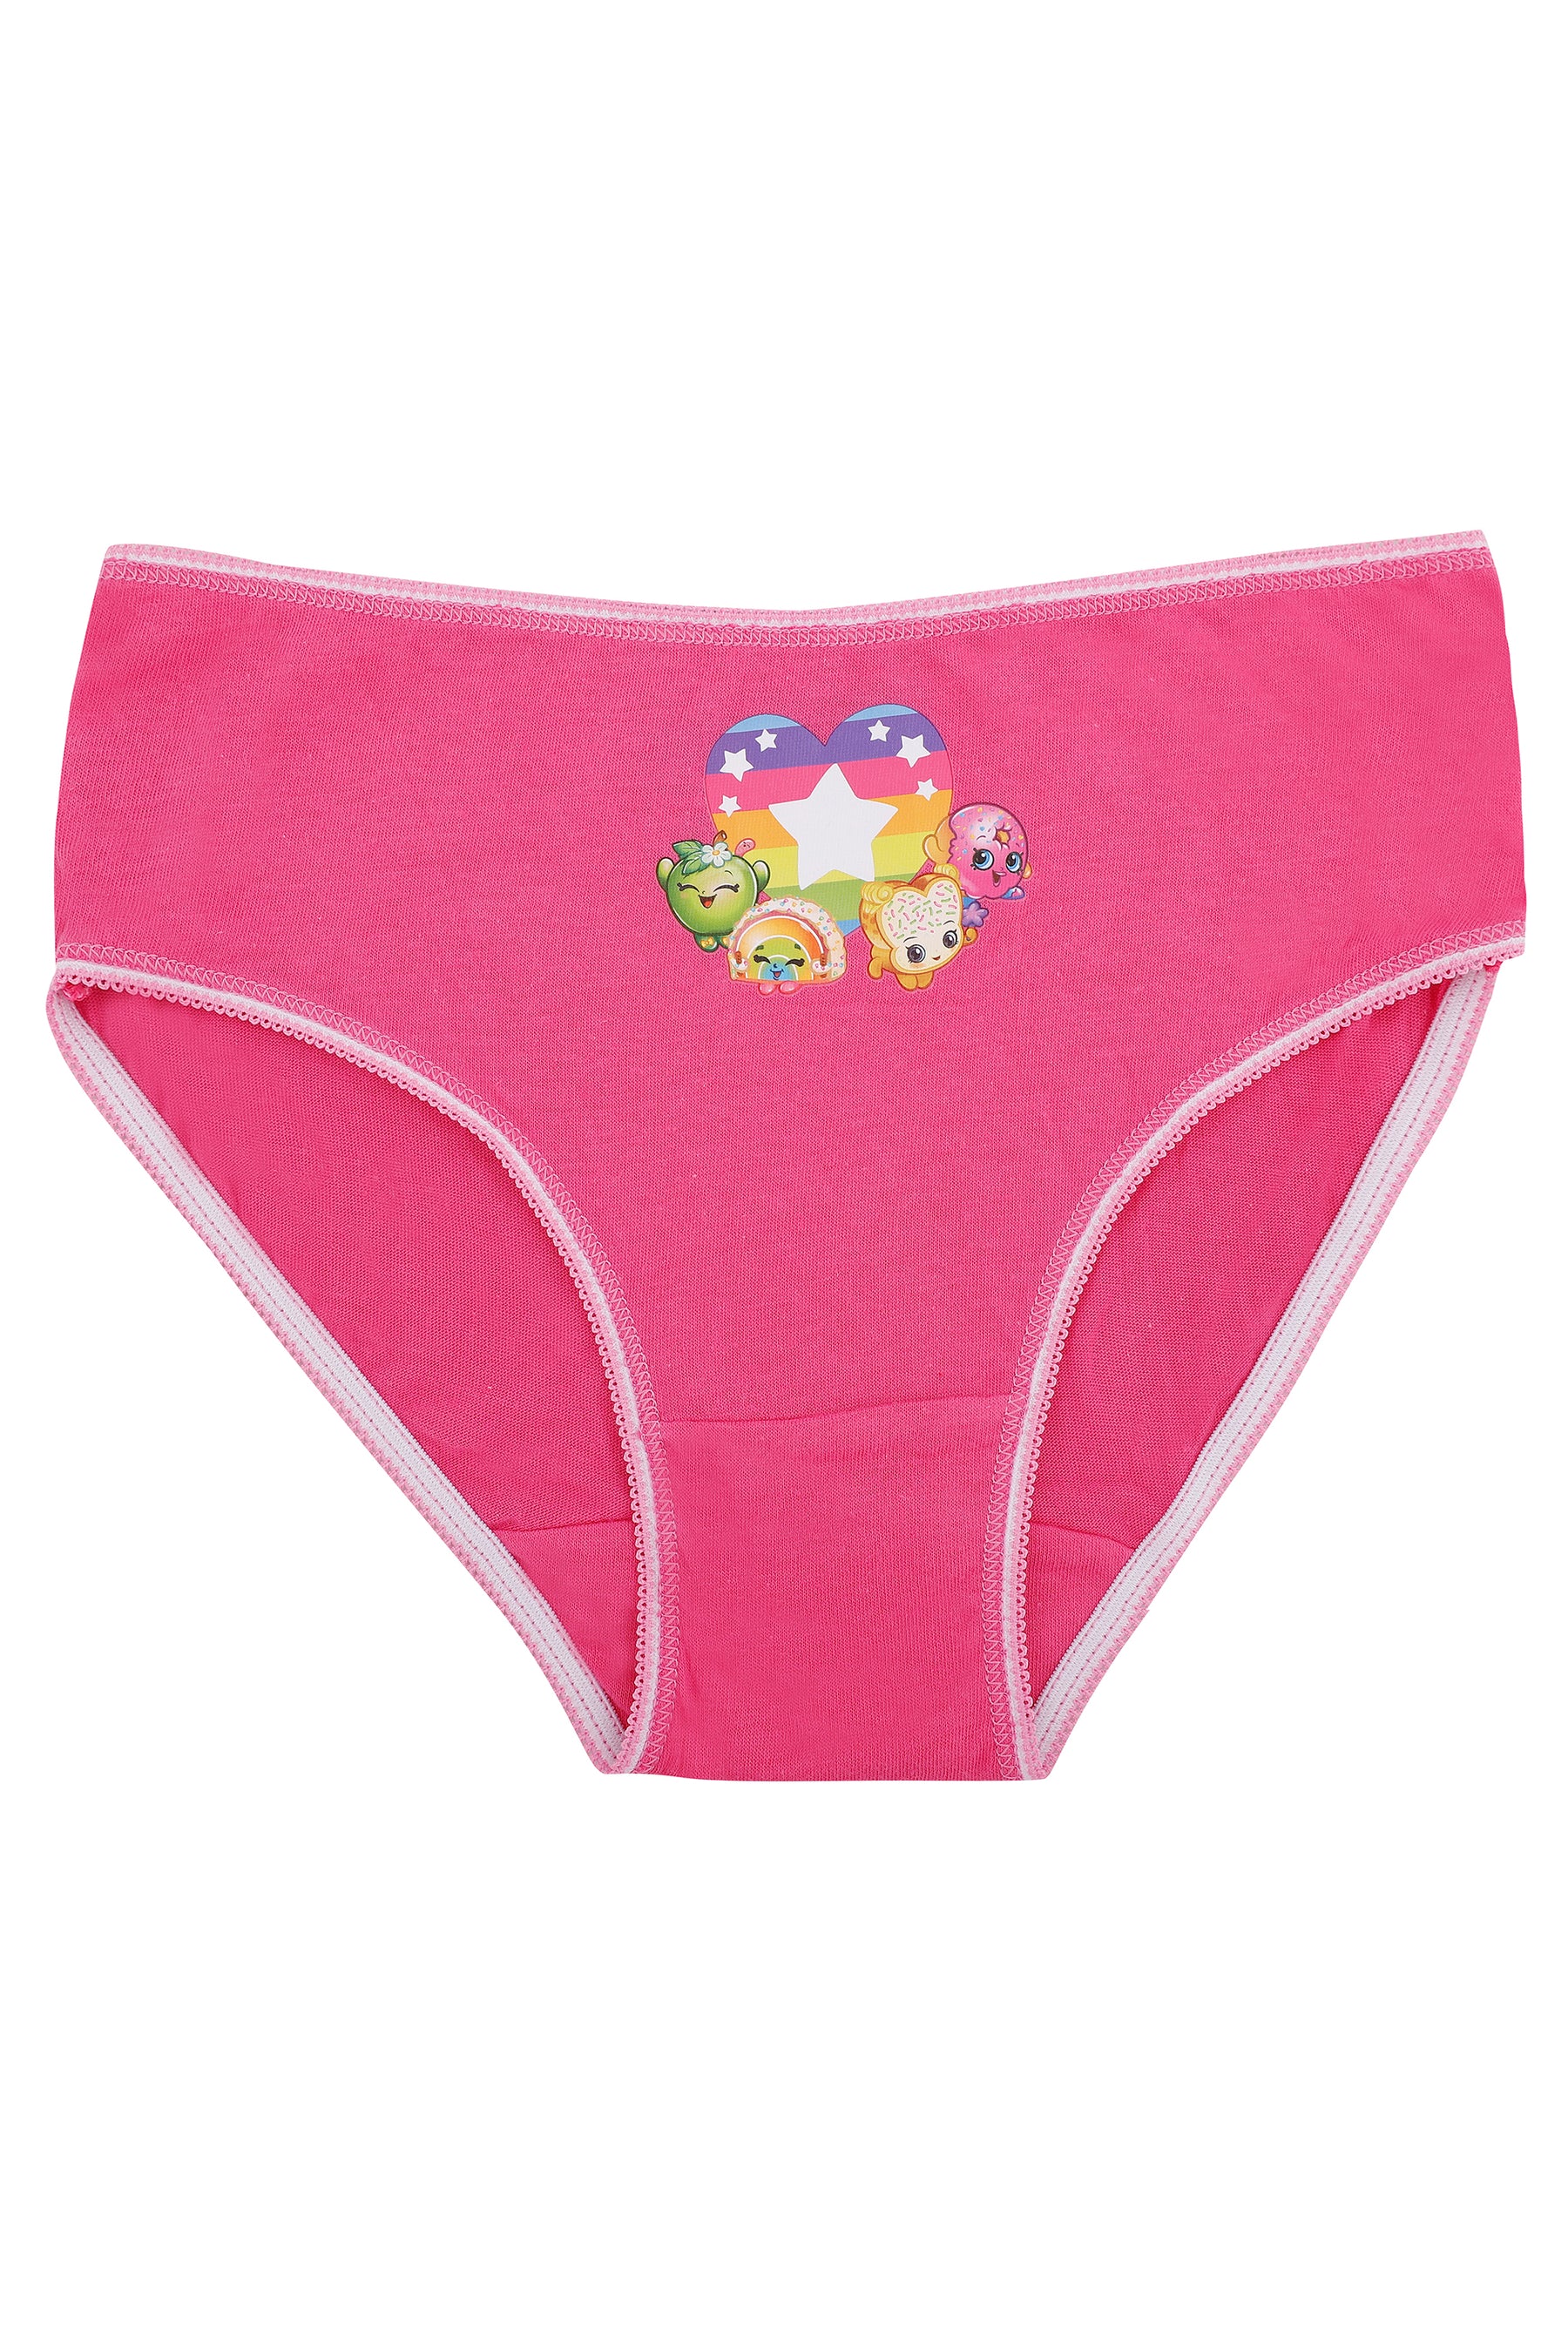 Shopkins Underwear Girls size 8 Panties Briefs 7 Pair NEW Apple Lippy Cookie